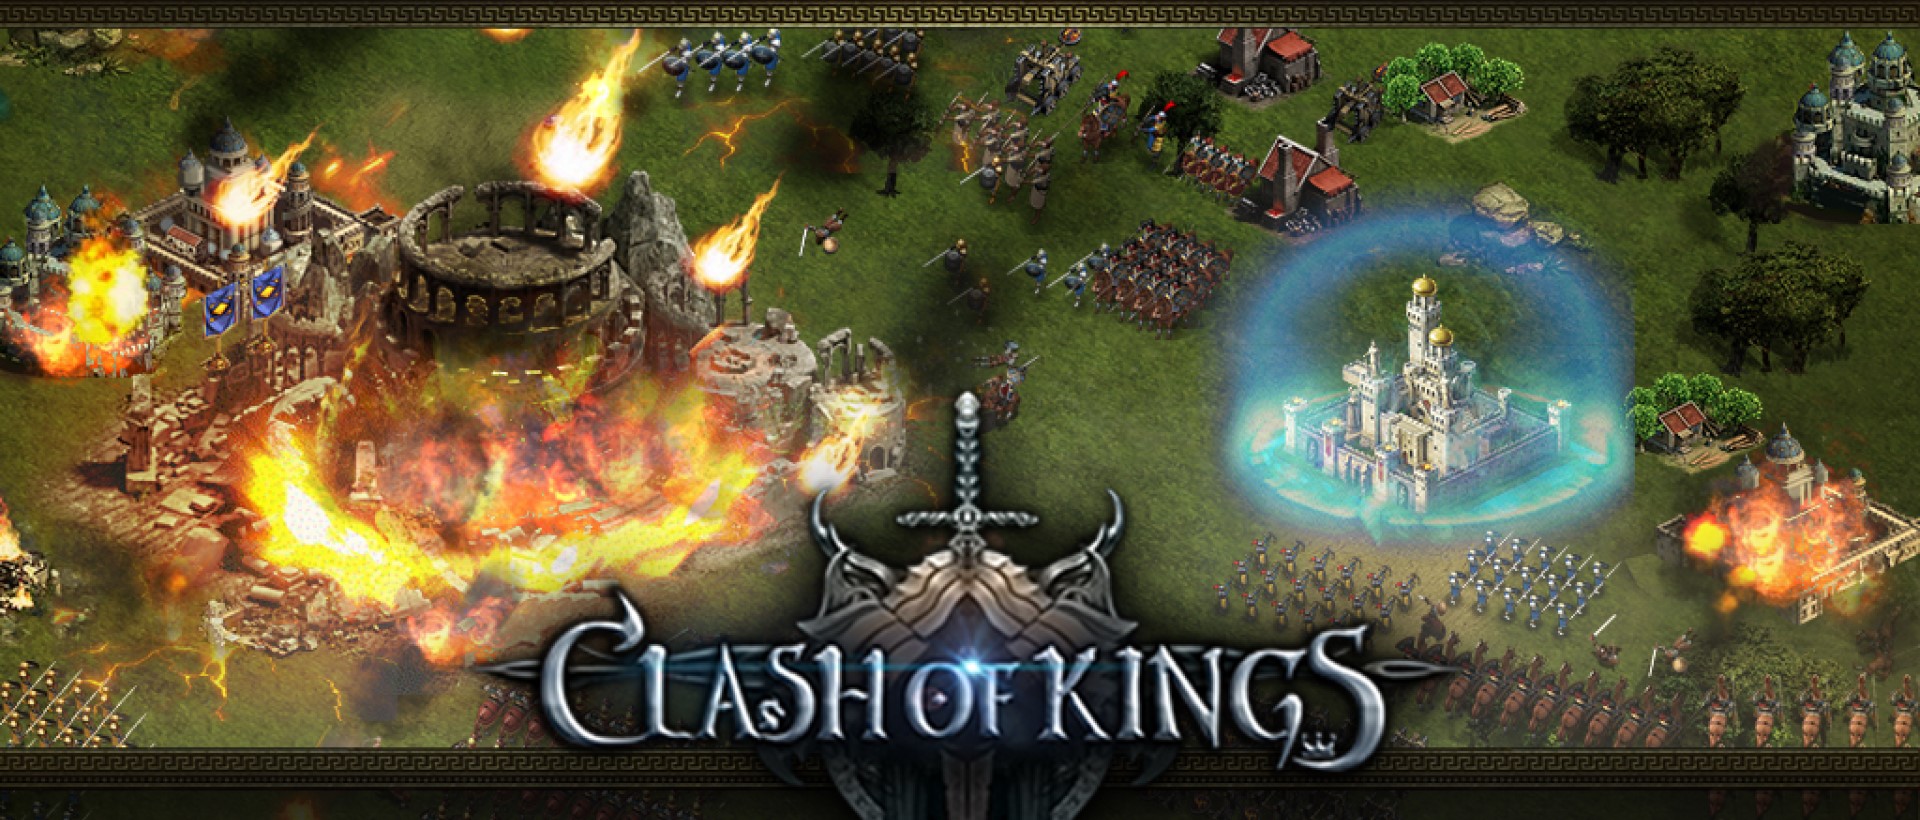 Baixar & Jogar Clash of Kings no PC & Mac (Emulador)